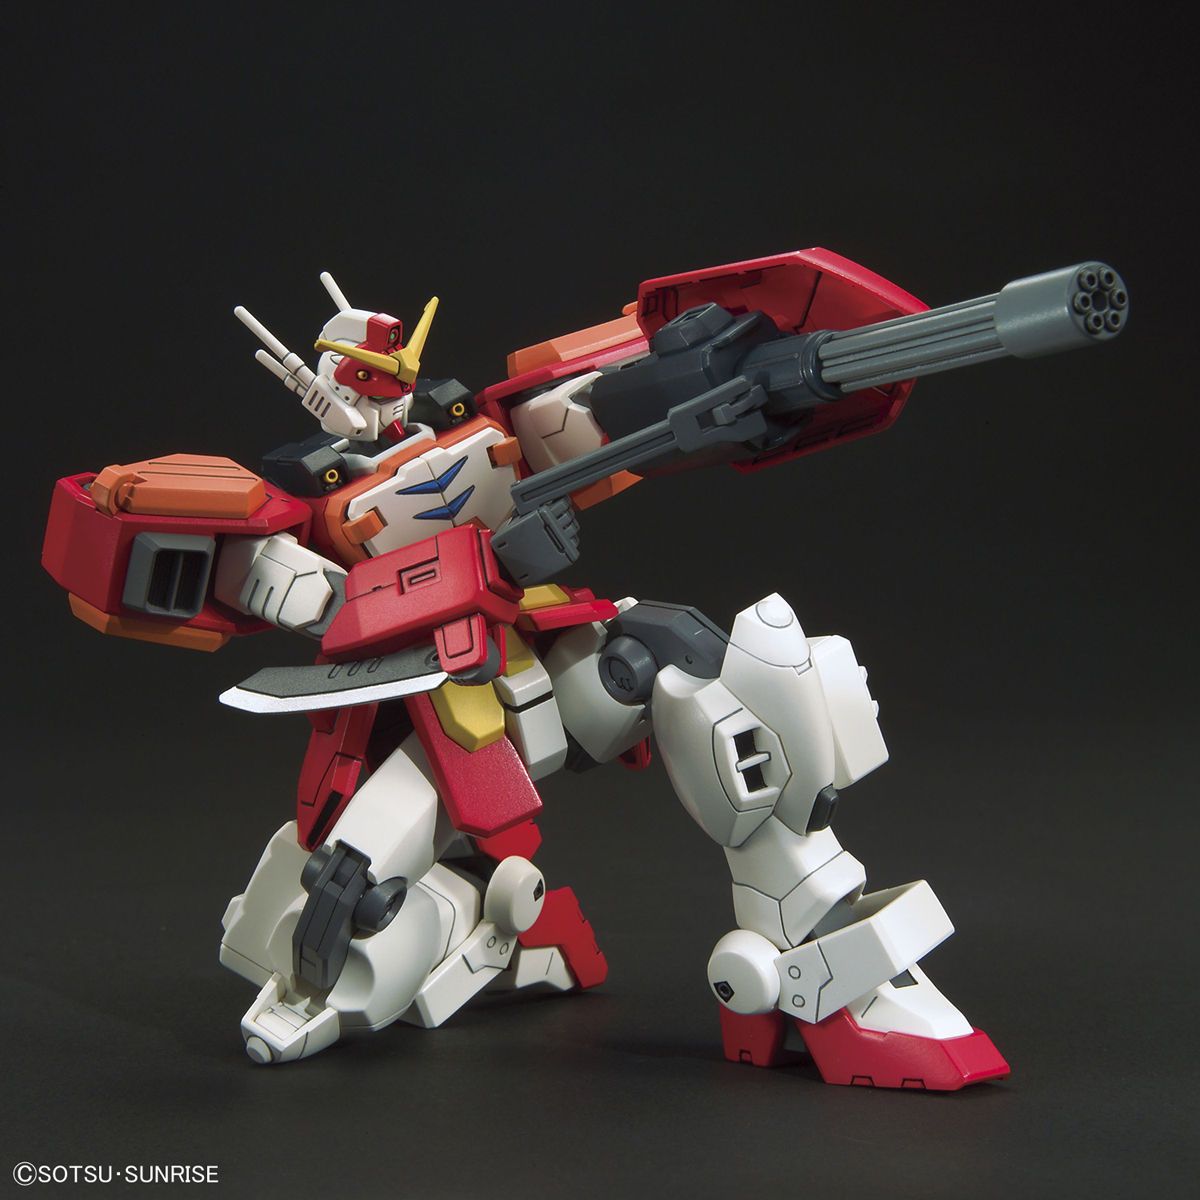 HGAC#236 XXXG-01H Gundam Heavyarms